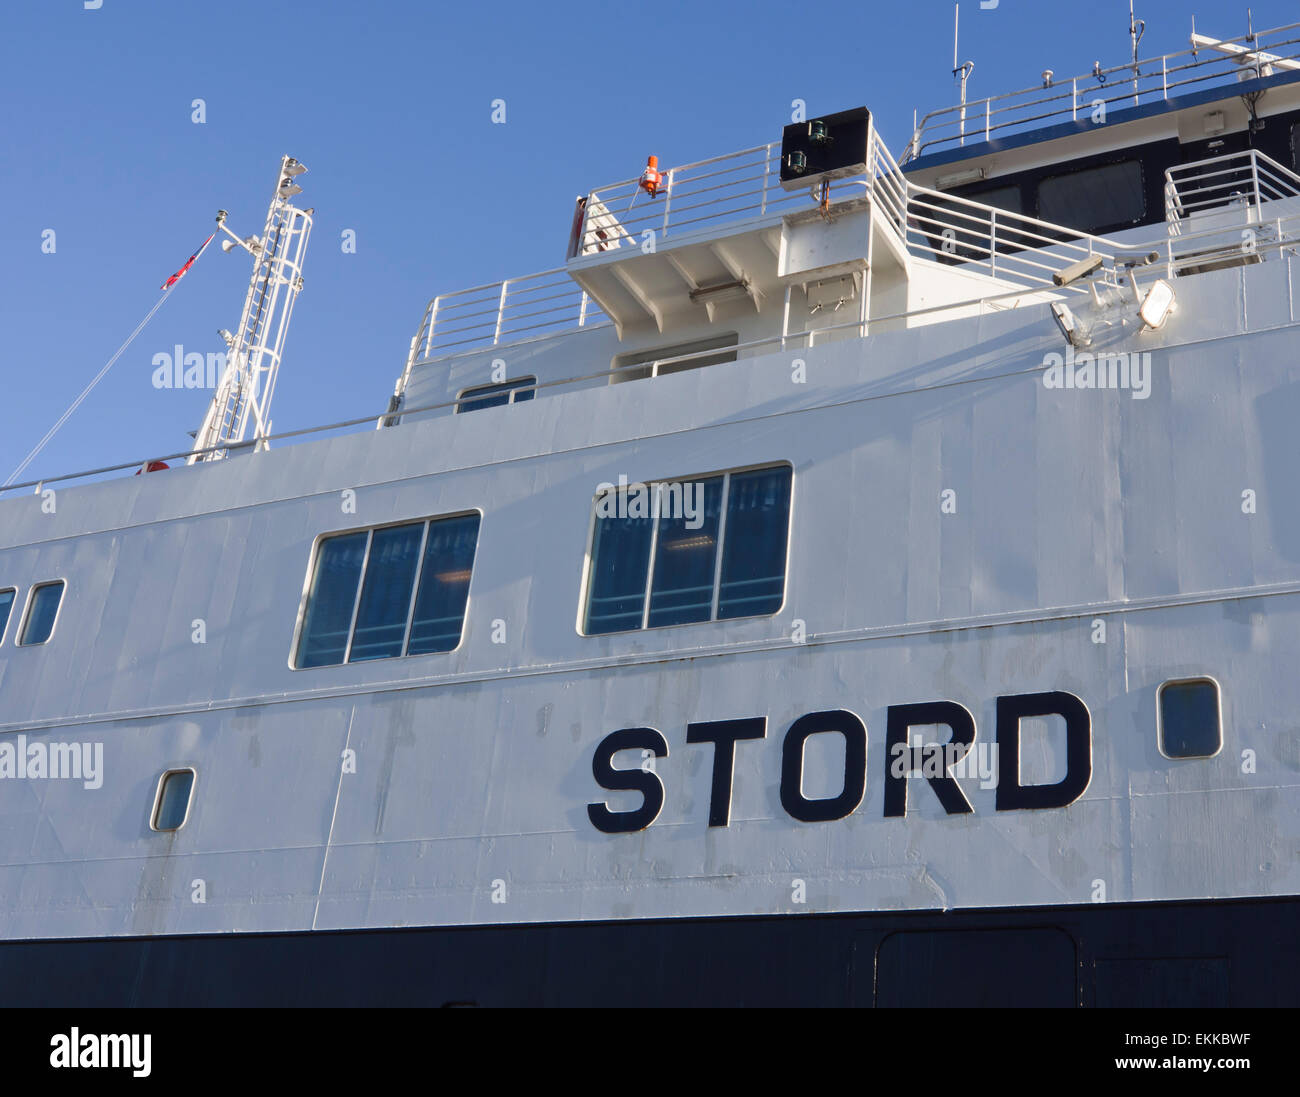 Traversier de passagers et voiture Stord dans le port de Stavanger en Norvège, prêt à transporter des passagers dans les fjords Banque D'Images